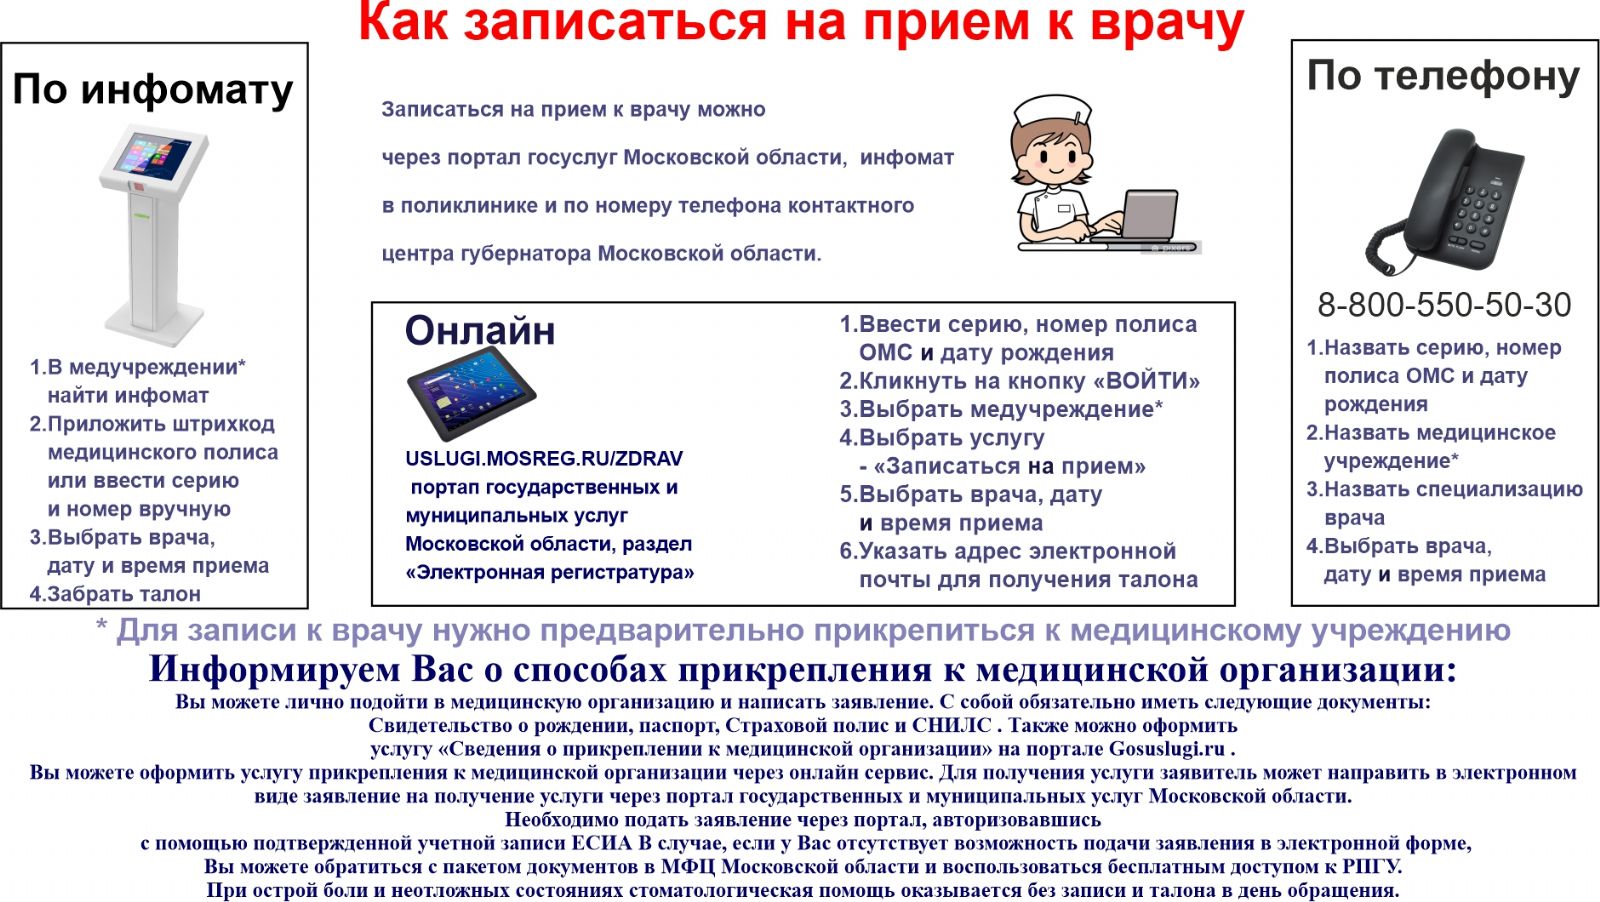 Электронная регистратура | Портал здравоохранения Мурманской области